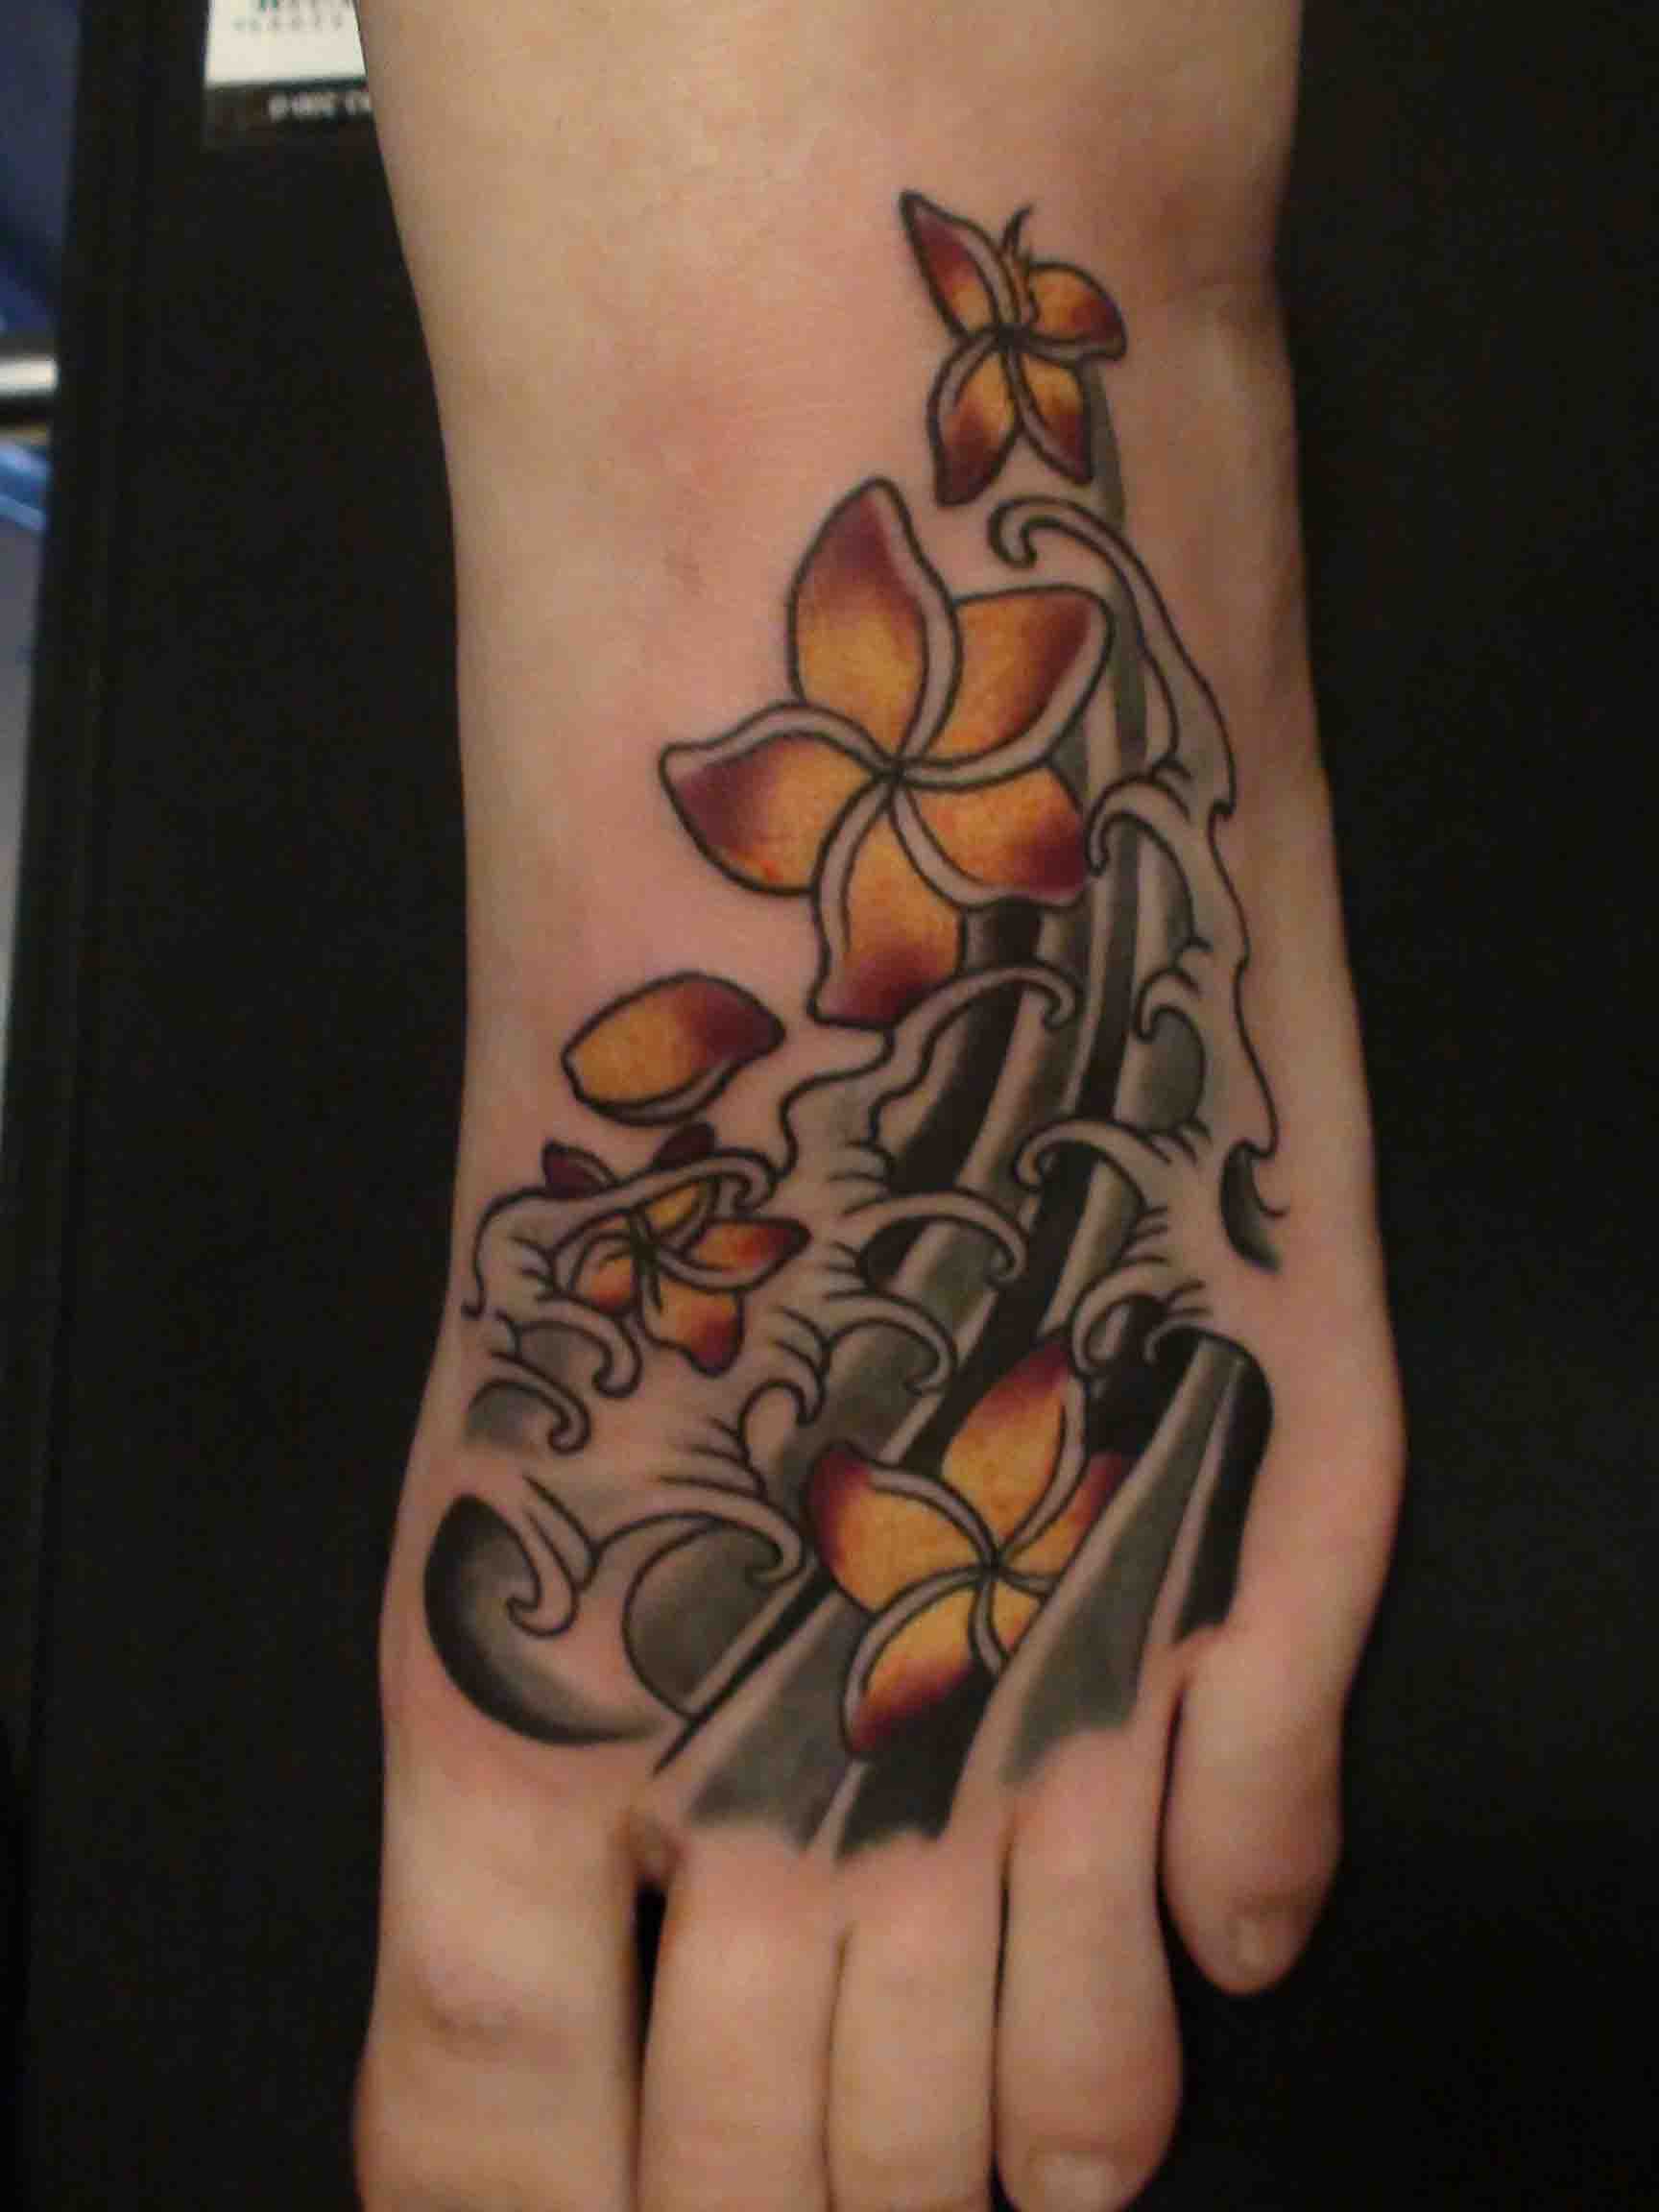 Foot tattoo by Shaun